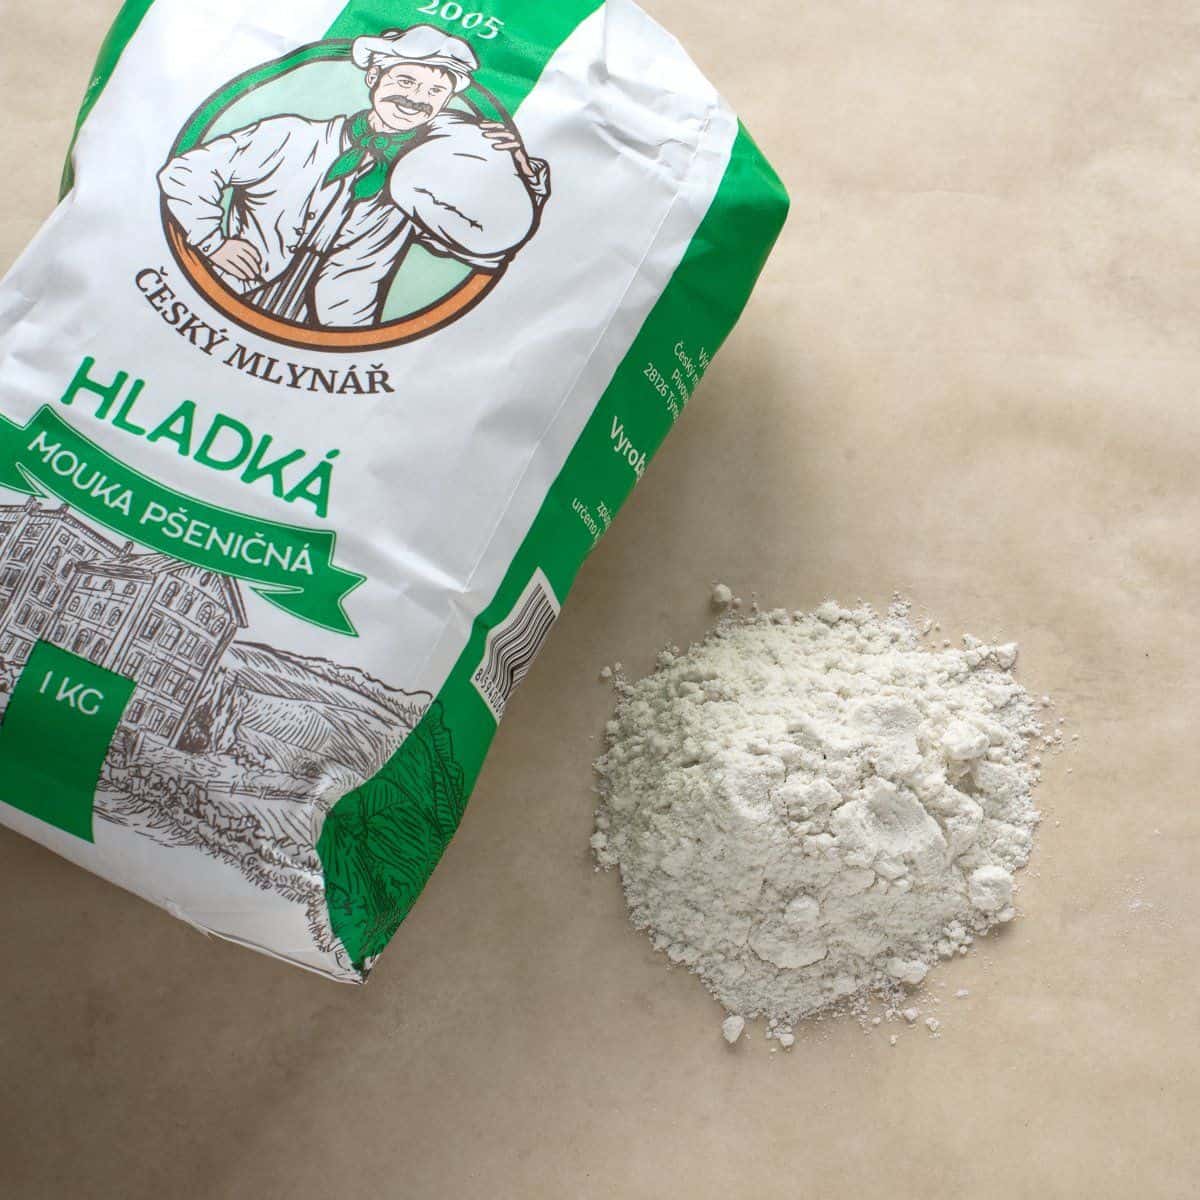 Czech hladká mouka flour.